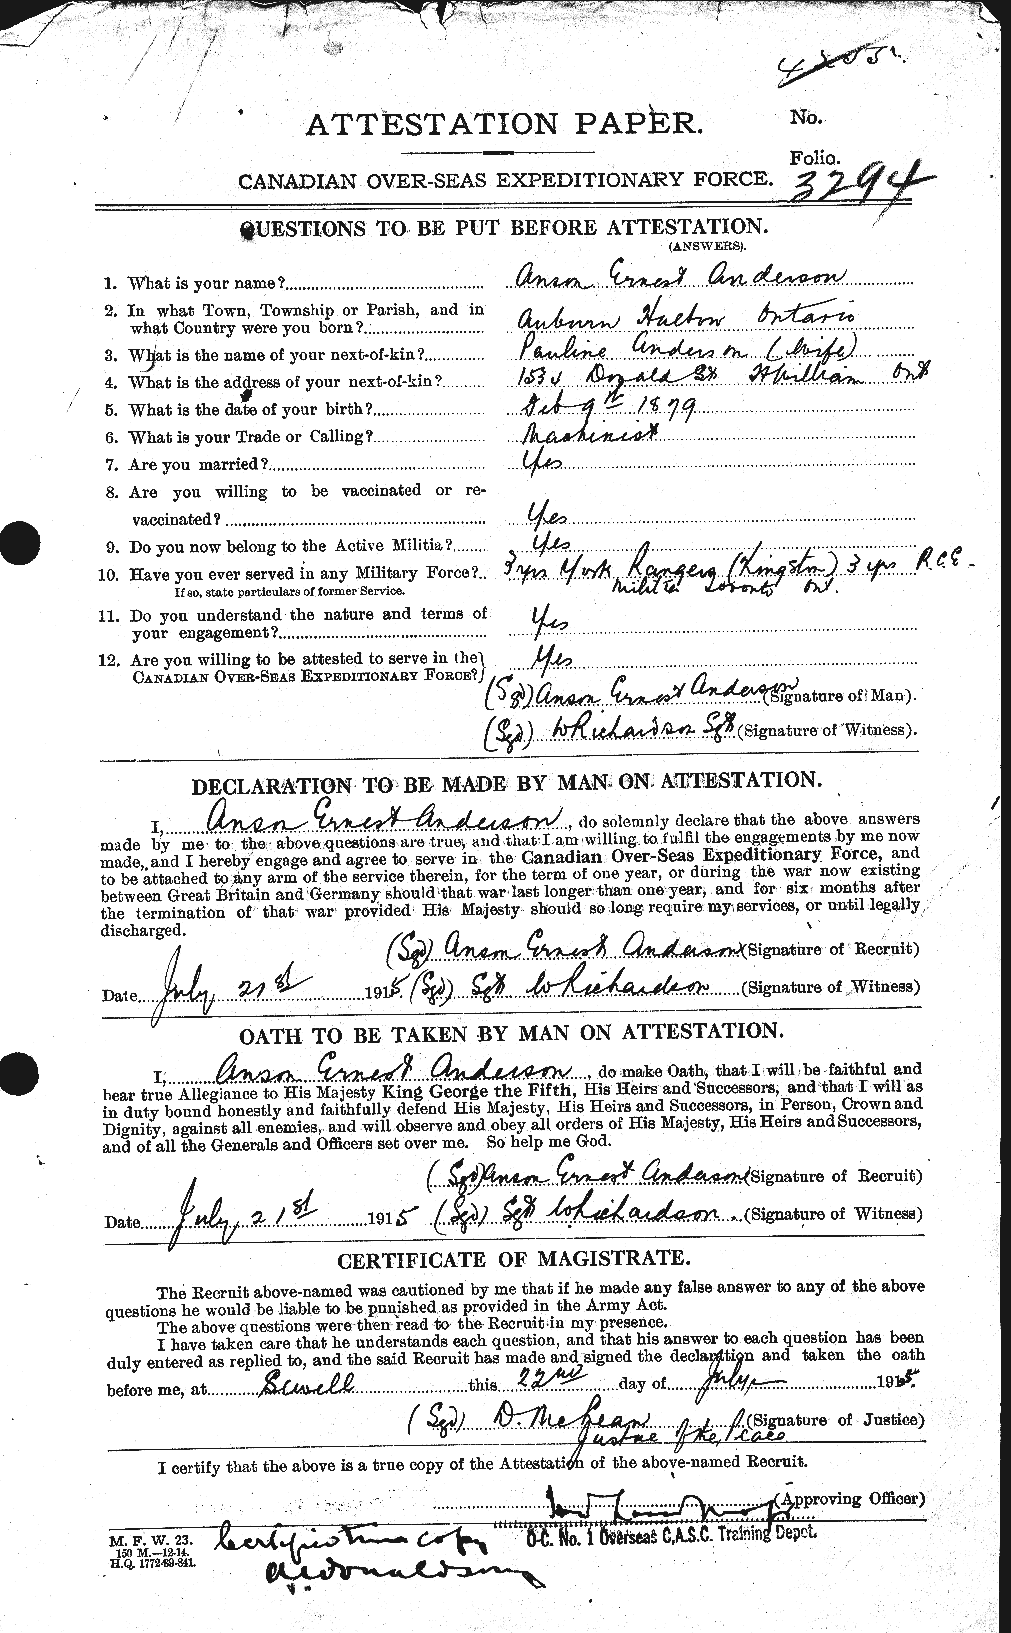 Dossiers du Personnel de la Première Guerre mondiale - CEC 209386a